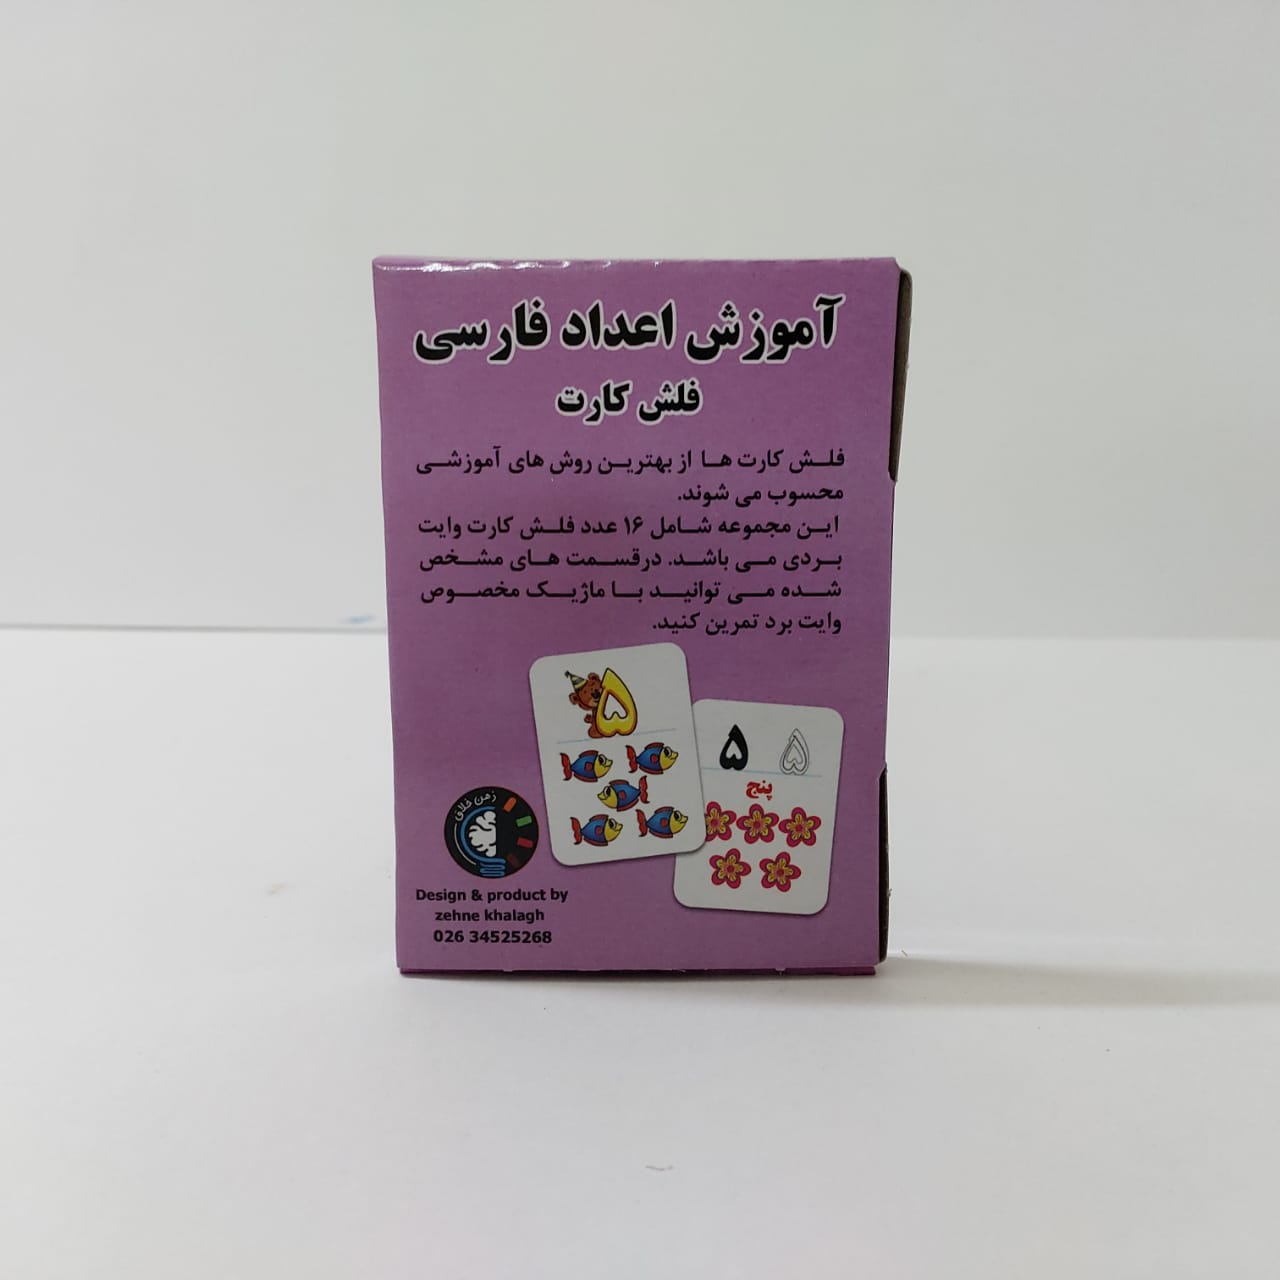 فلش کارت آموزش اعداد فارسی  کد 61020